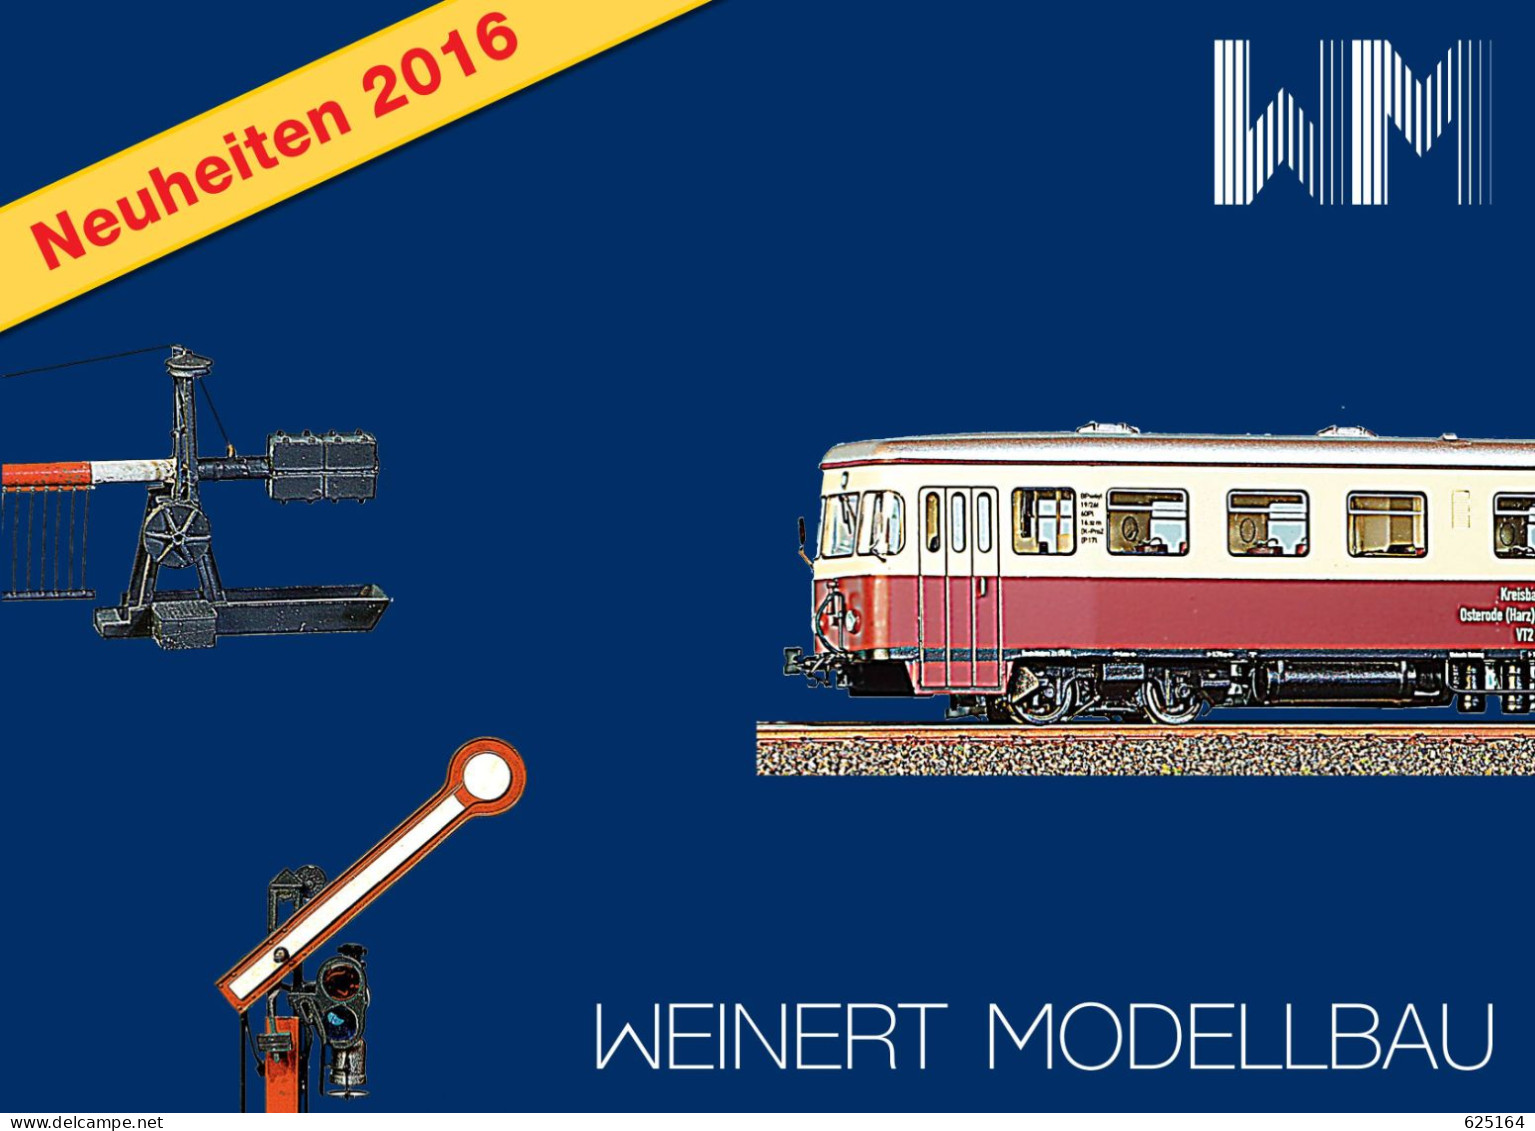 Catalogue WEINERT MODELLBAU 2016 Neuheiten Messing Bausatz Spur HO Z N TT O 1 - Deutsch